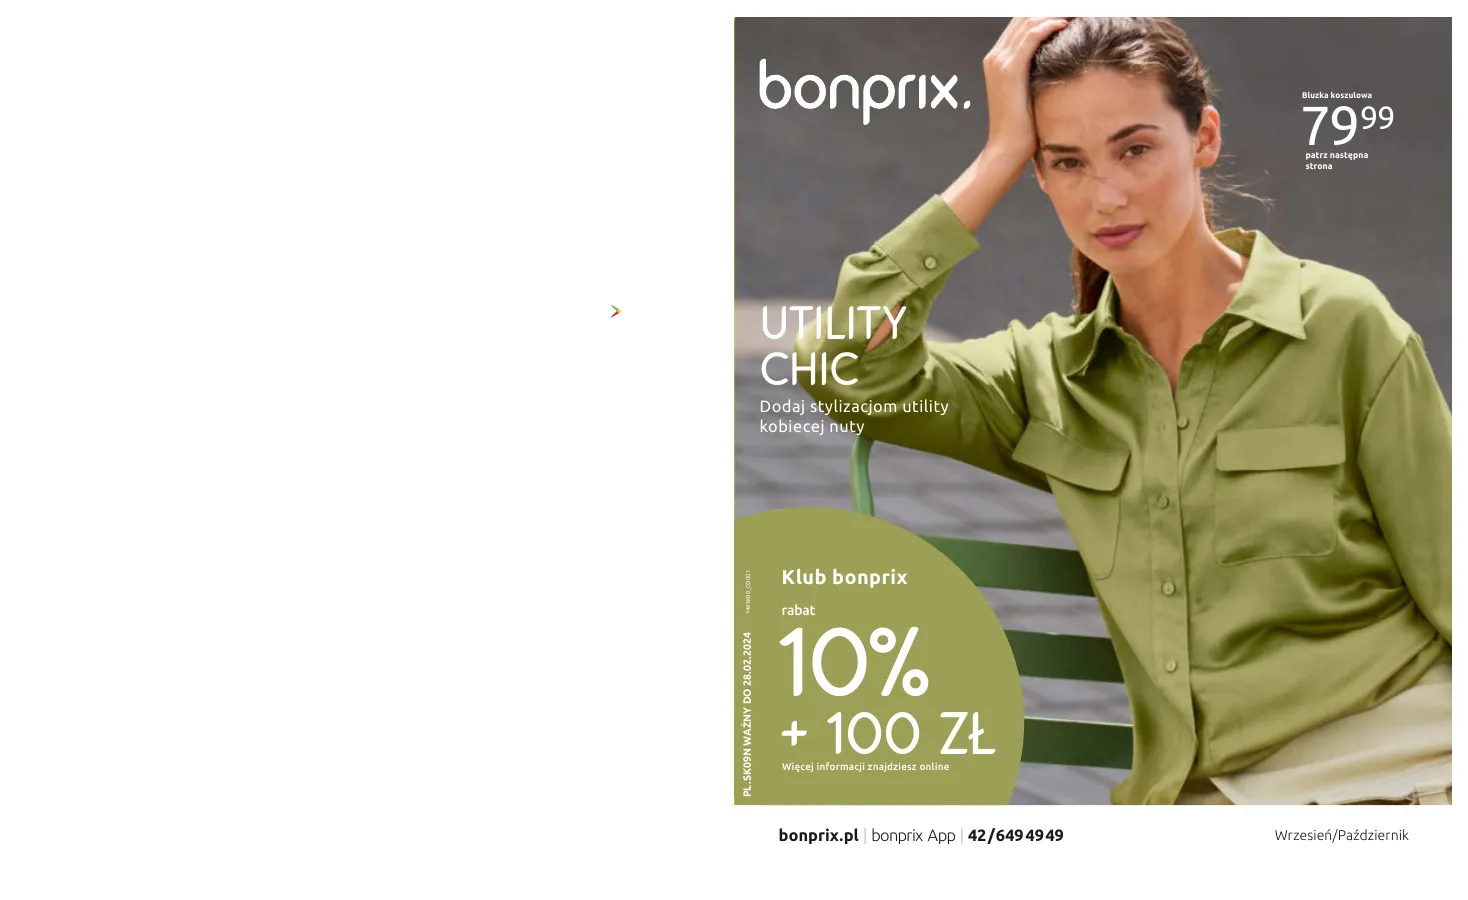 Gazetka promocyjna sklepu Bonprix - Mega okazje Black friday - data obowiązywania: od 01.10 do 28.02